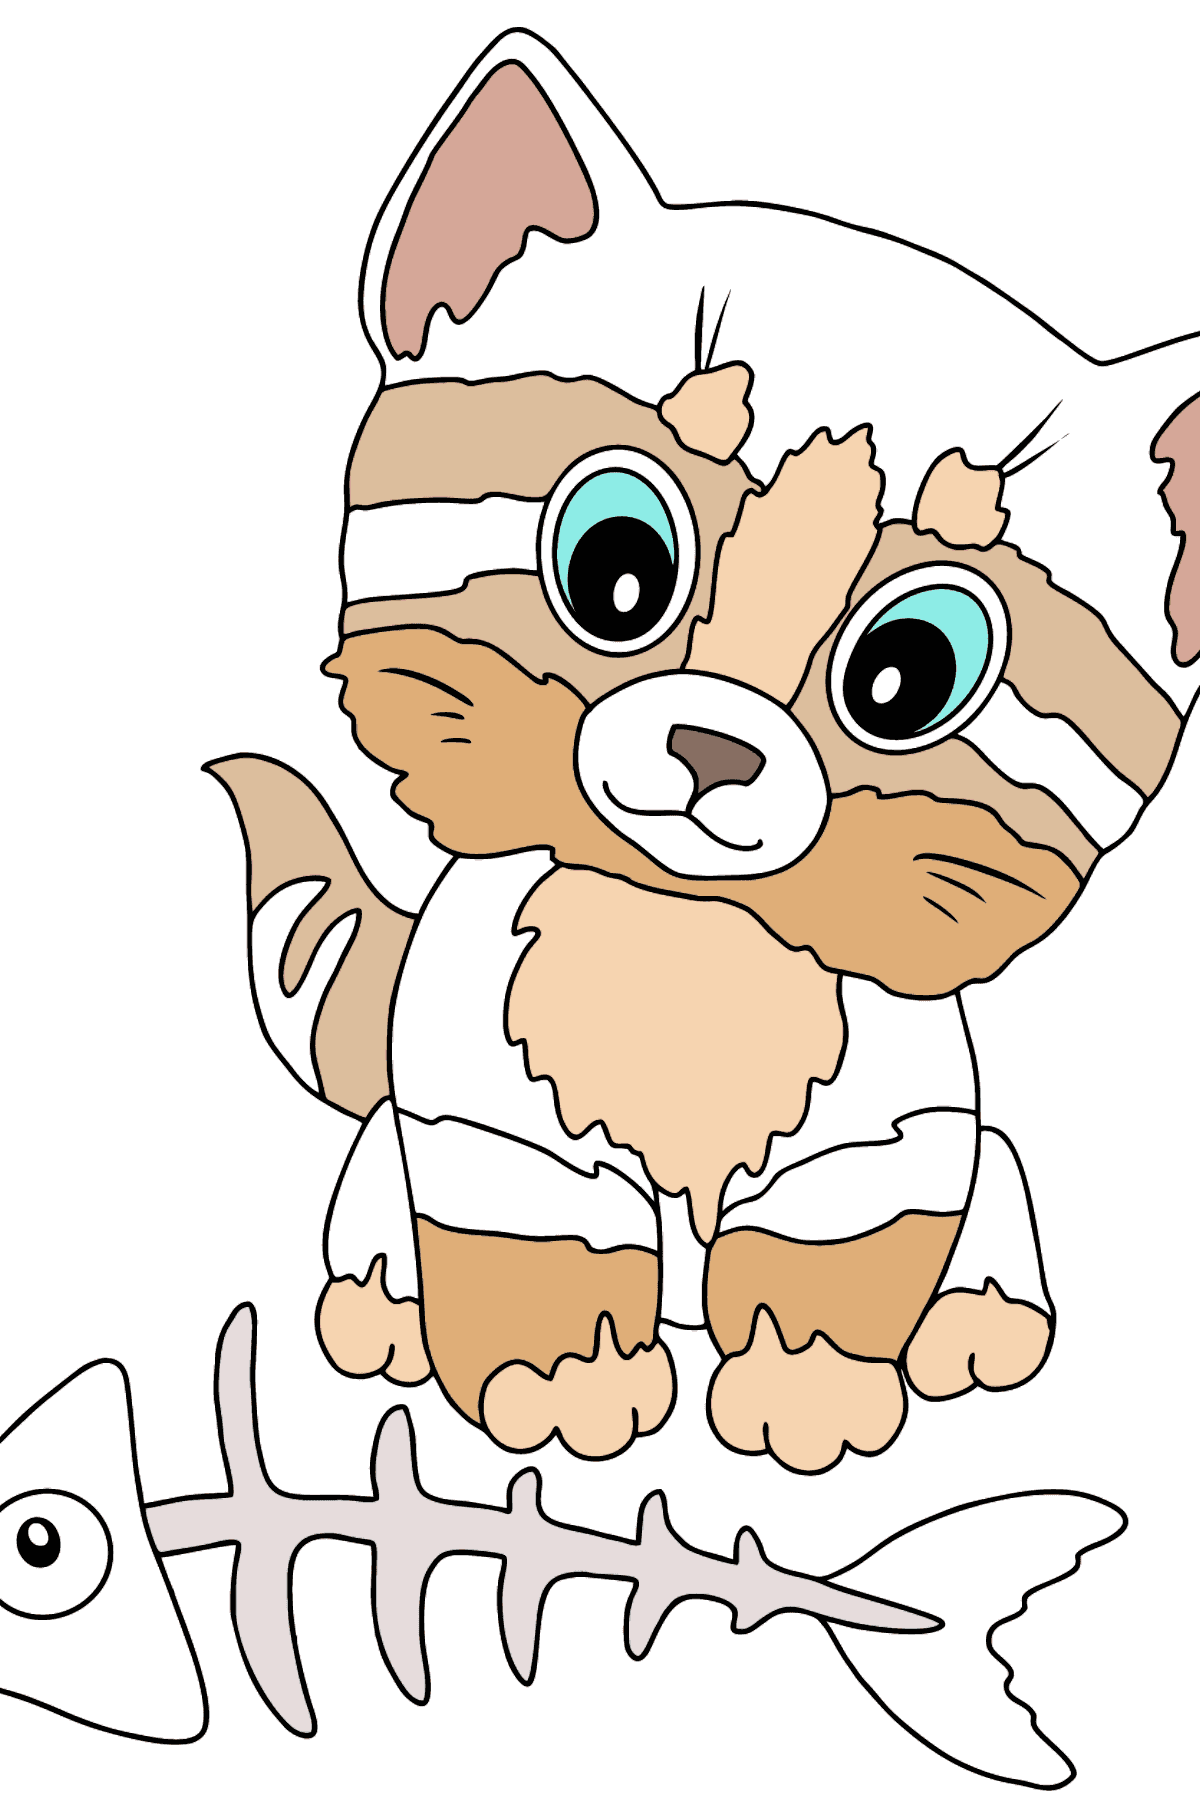 Desenho para colorir de Gato com Osso de Peixe - Imagens para Colorir para Crianças